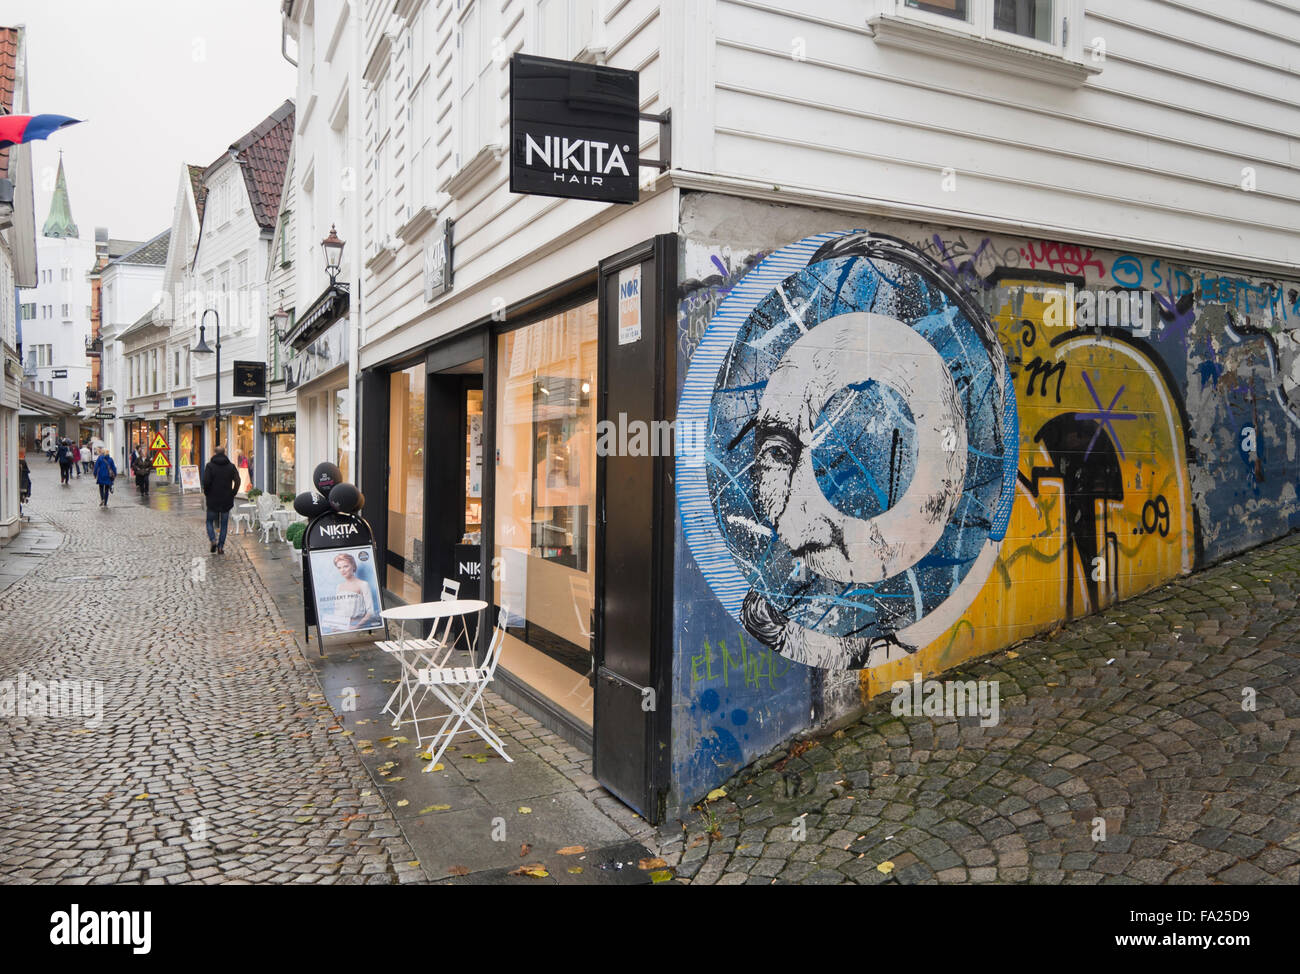 Das Nuart-Festival in Stavanger Norwegen inspiriert Künstler Wandbilder in der ganzen Stadt, eine bunte und lustige Ergänzung zu machen Stockfoto